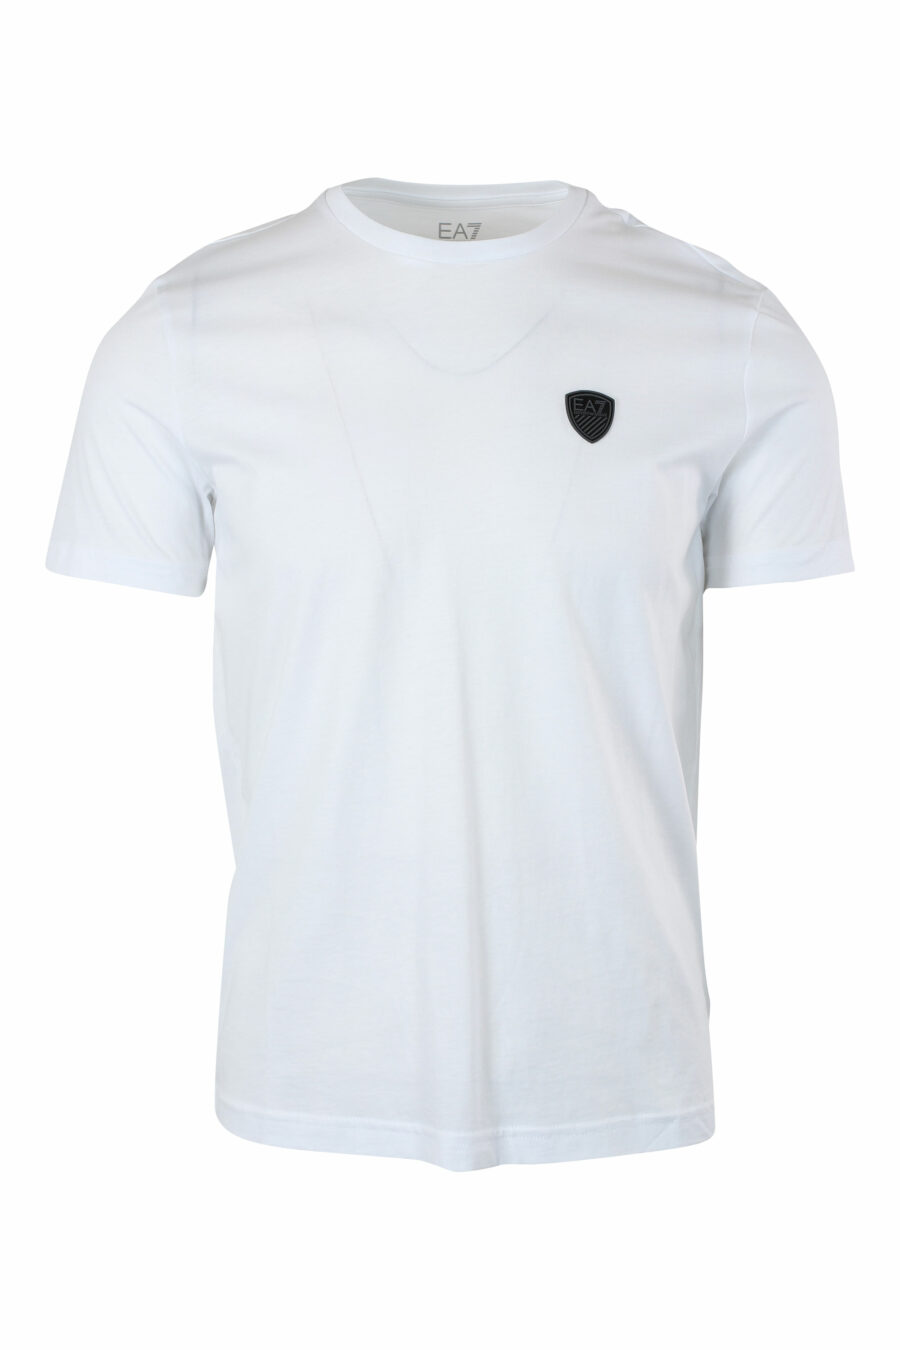 Weißes T-Shirt mit Mini-Gummiabzeichen - IMG 9636